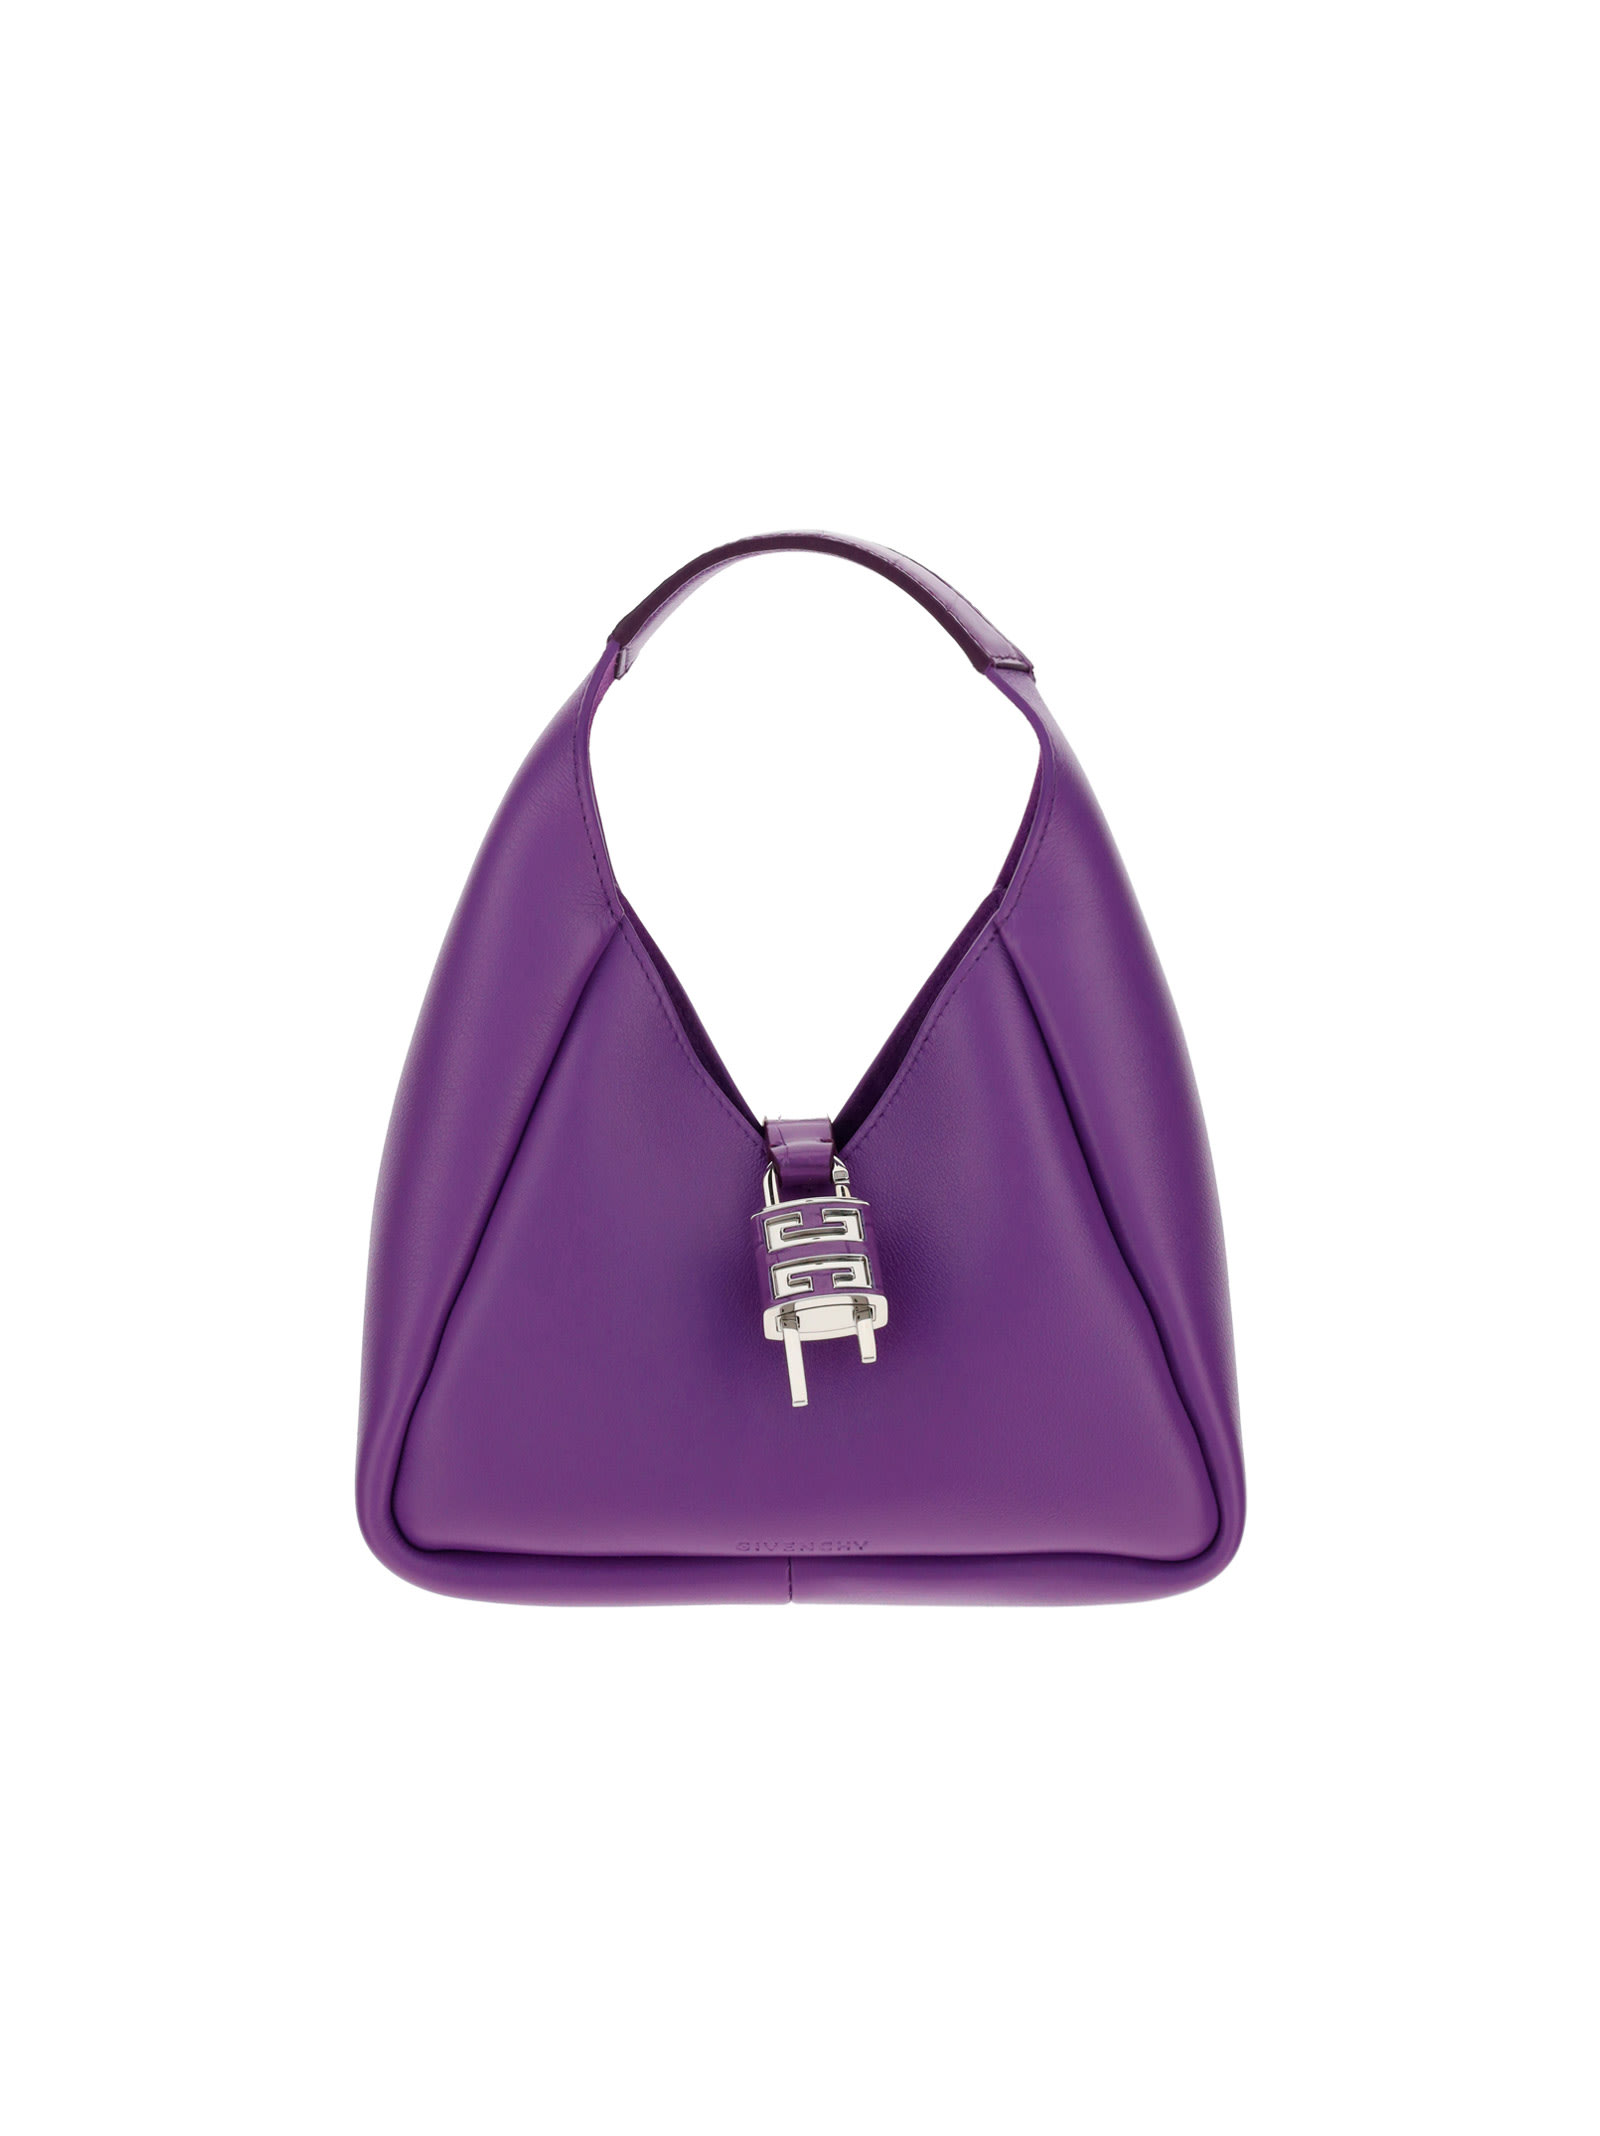 Givenchy Hobo Mini Handbag